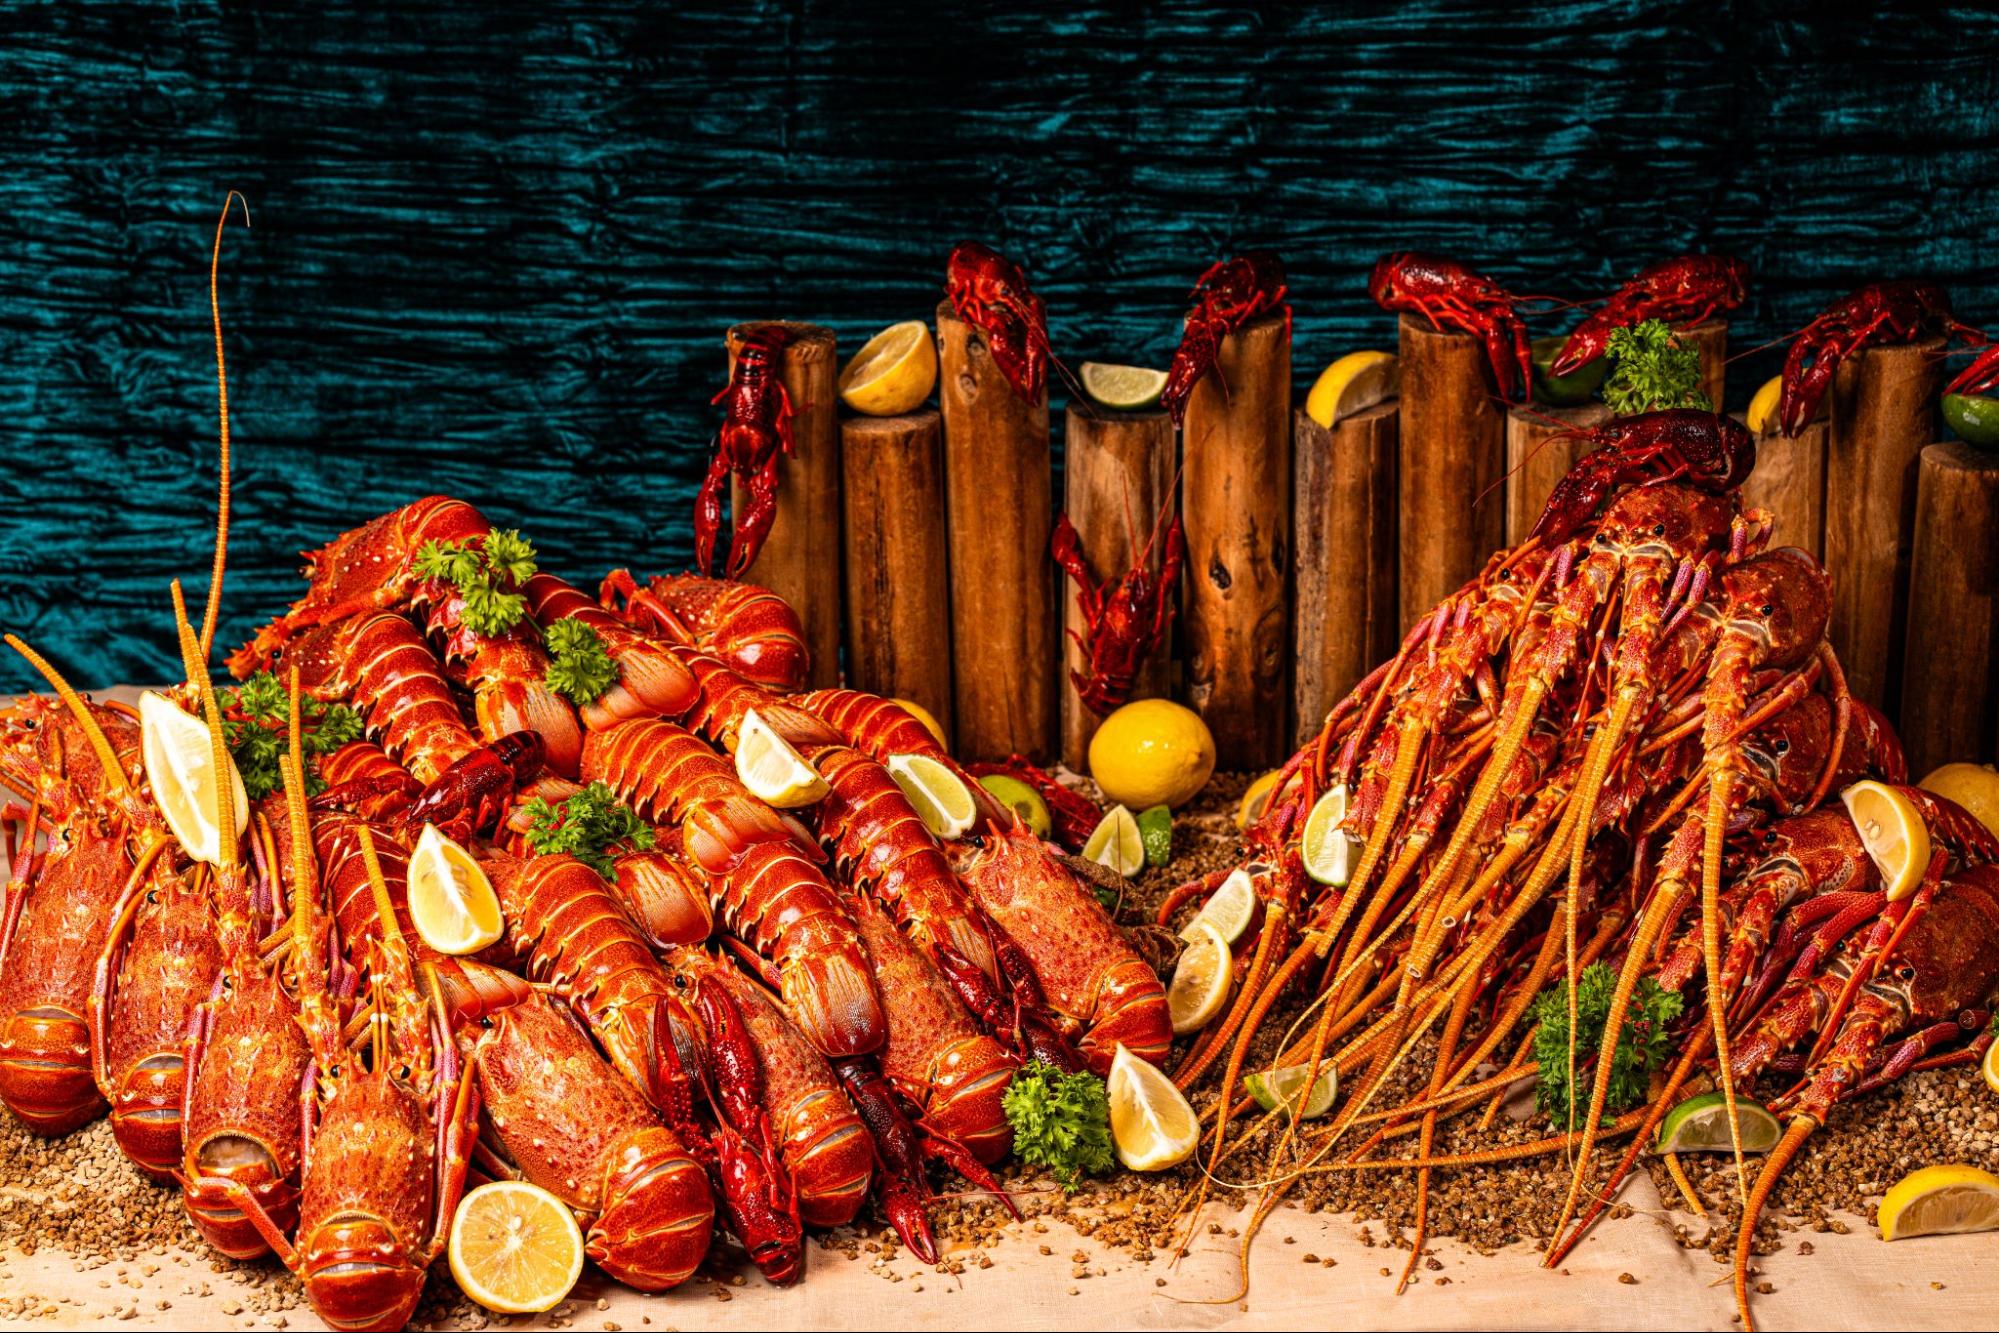 Novotel-Singapore-on-Stevens-lobster